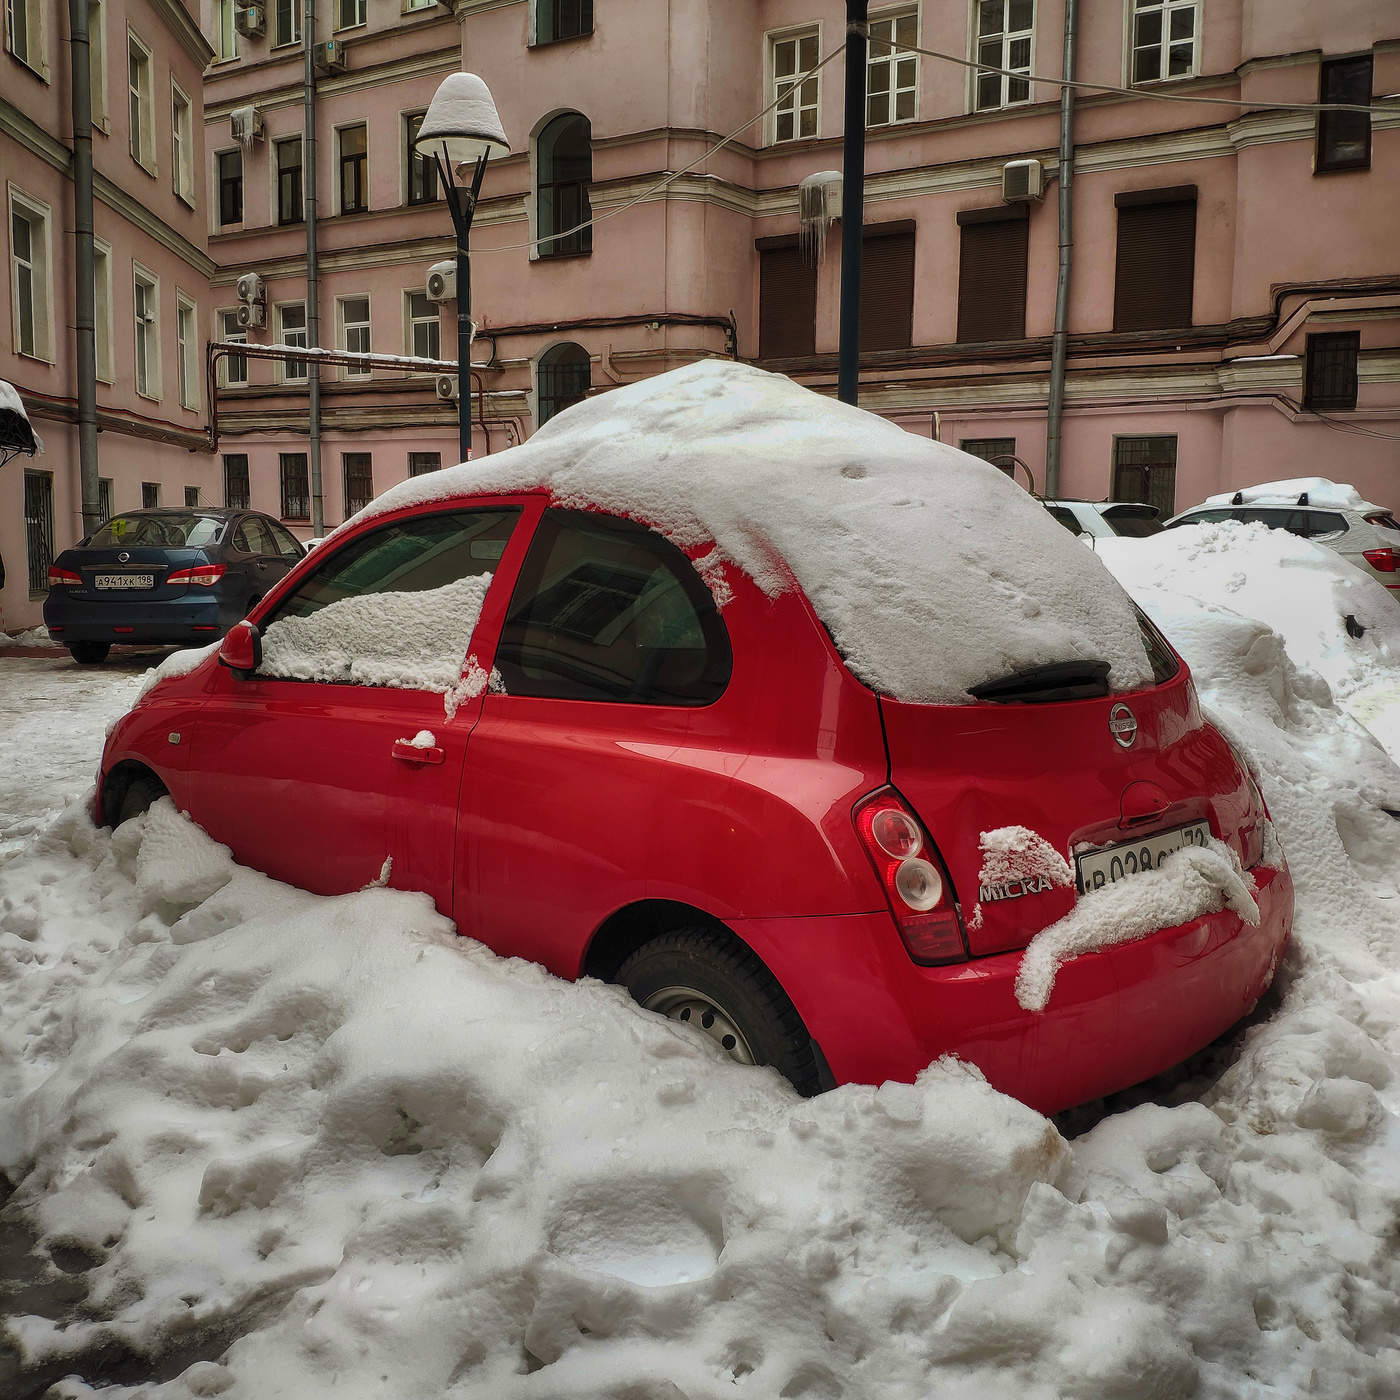 На панели красная машинка. Красная машинка. Машинка красная в снегу. Красная машинка зимой. Красный автомобиль зима город.